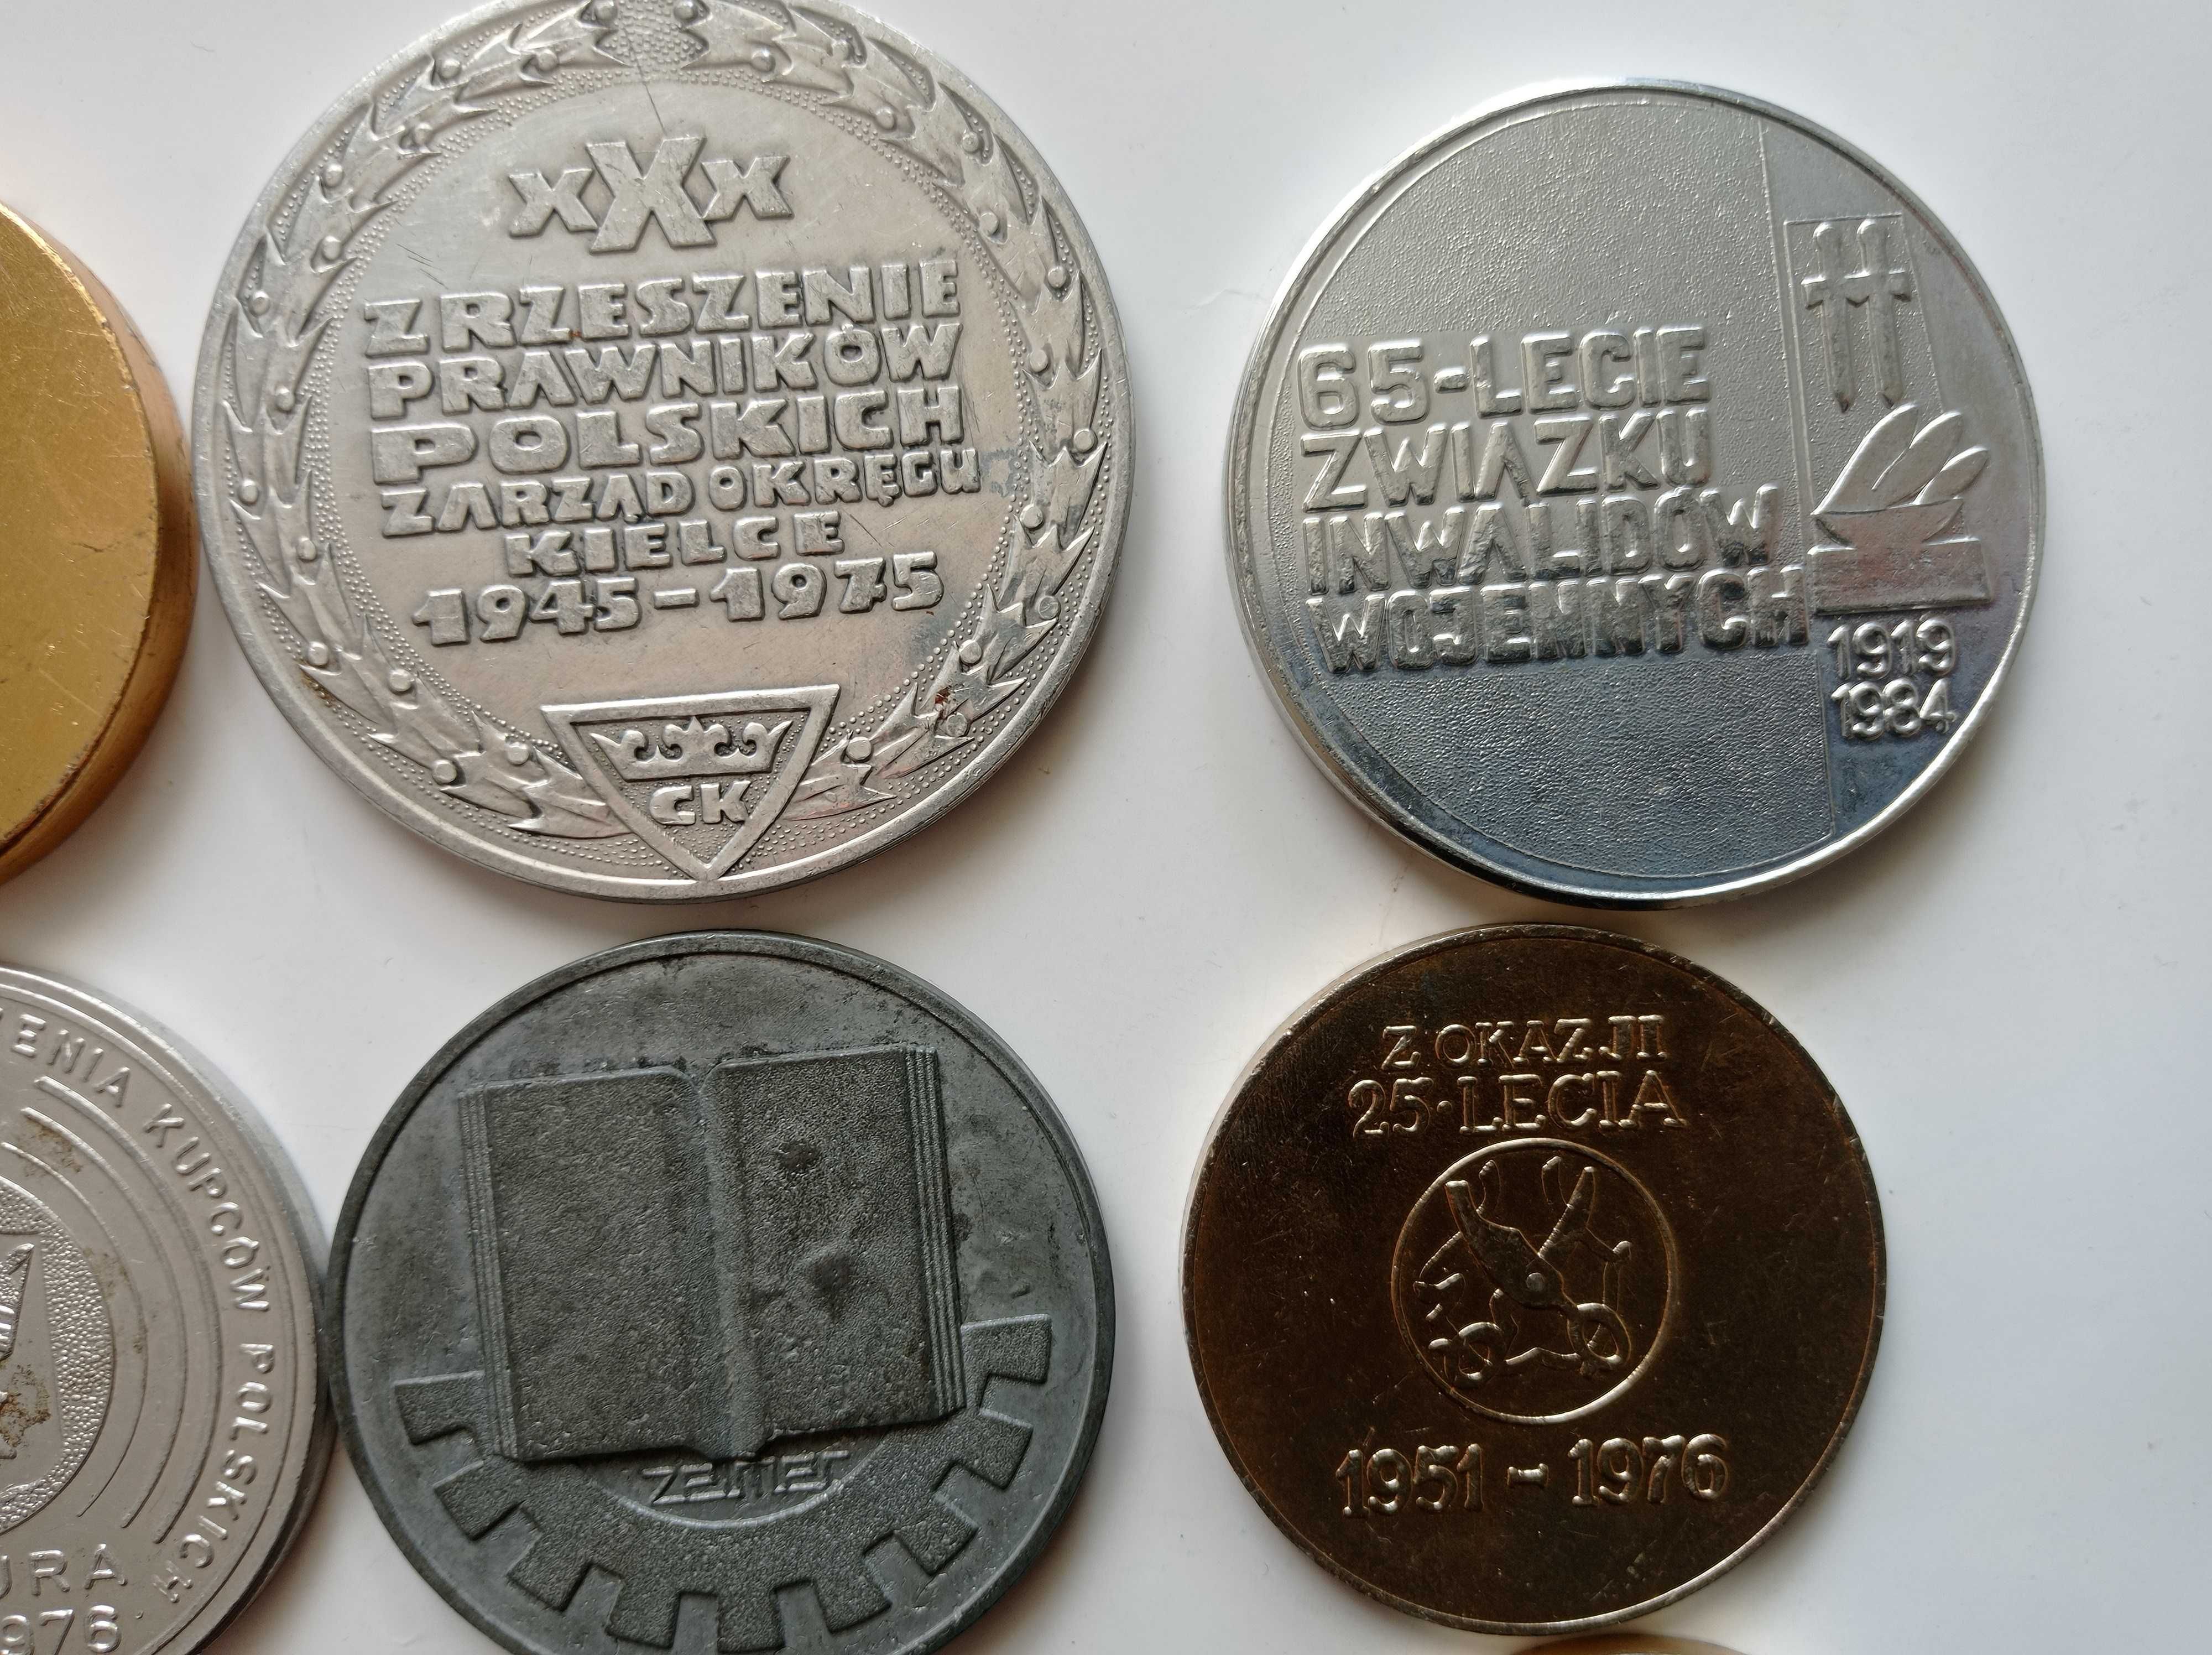 Medale z PRL - Mielec + Rzeszów, Kielce, Pińczów, N. Dęba - 15 sztuk.